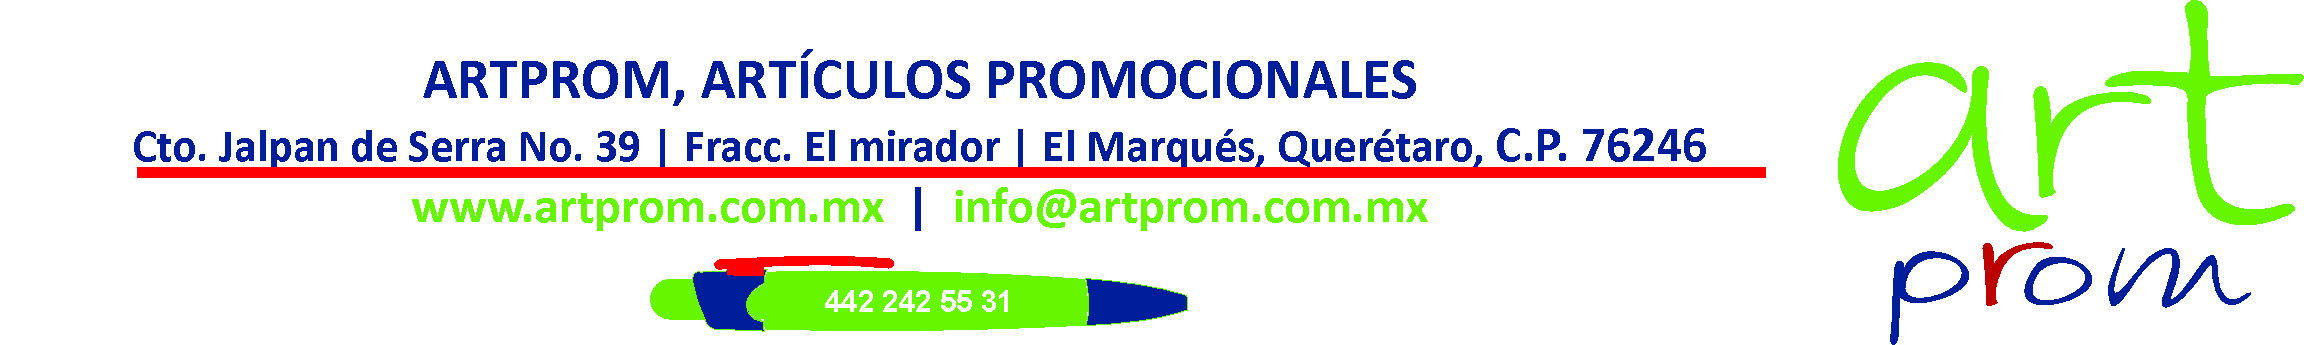 Artprom, Distribución artículos Promocionales, impresos, grabadas, bordados, etc.